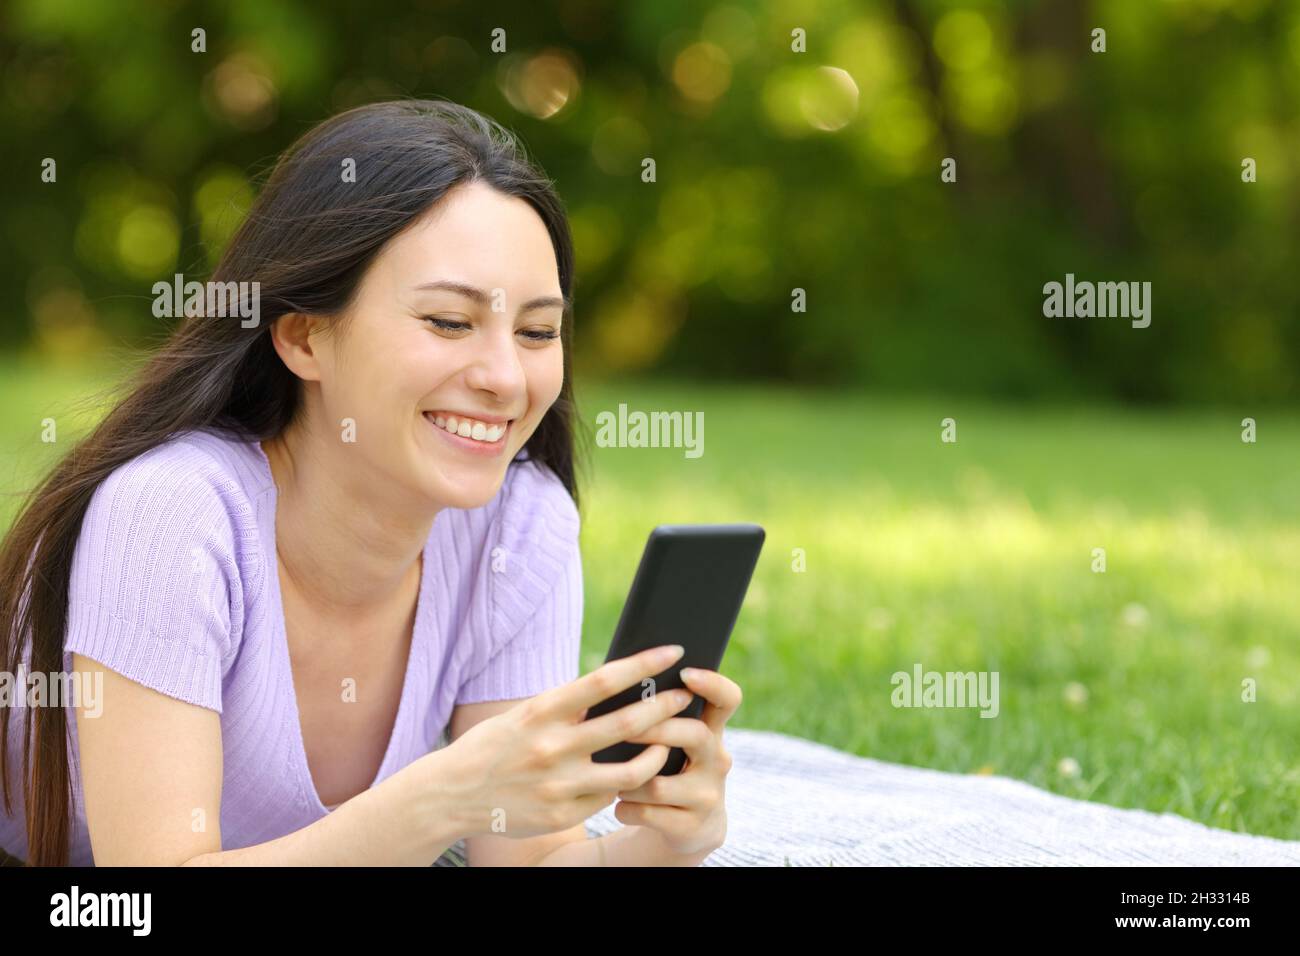 Donna asiatica felice che controlla il telefono cellulare che giace sull'erba in un parco Foto Stock